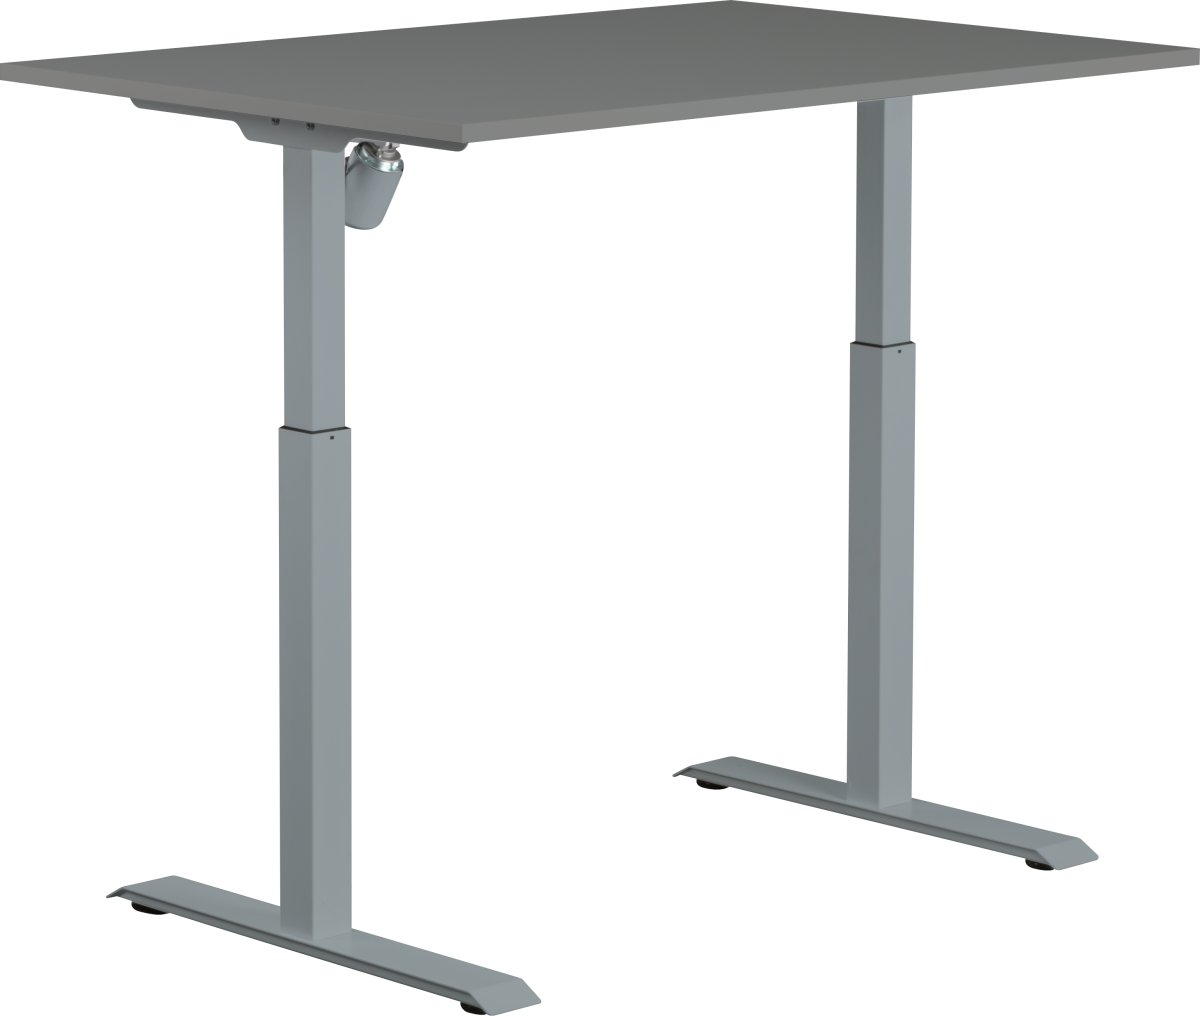 Sun-Flex I höj- och sänkbart bord, 120x80, grå/grå